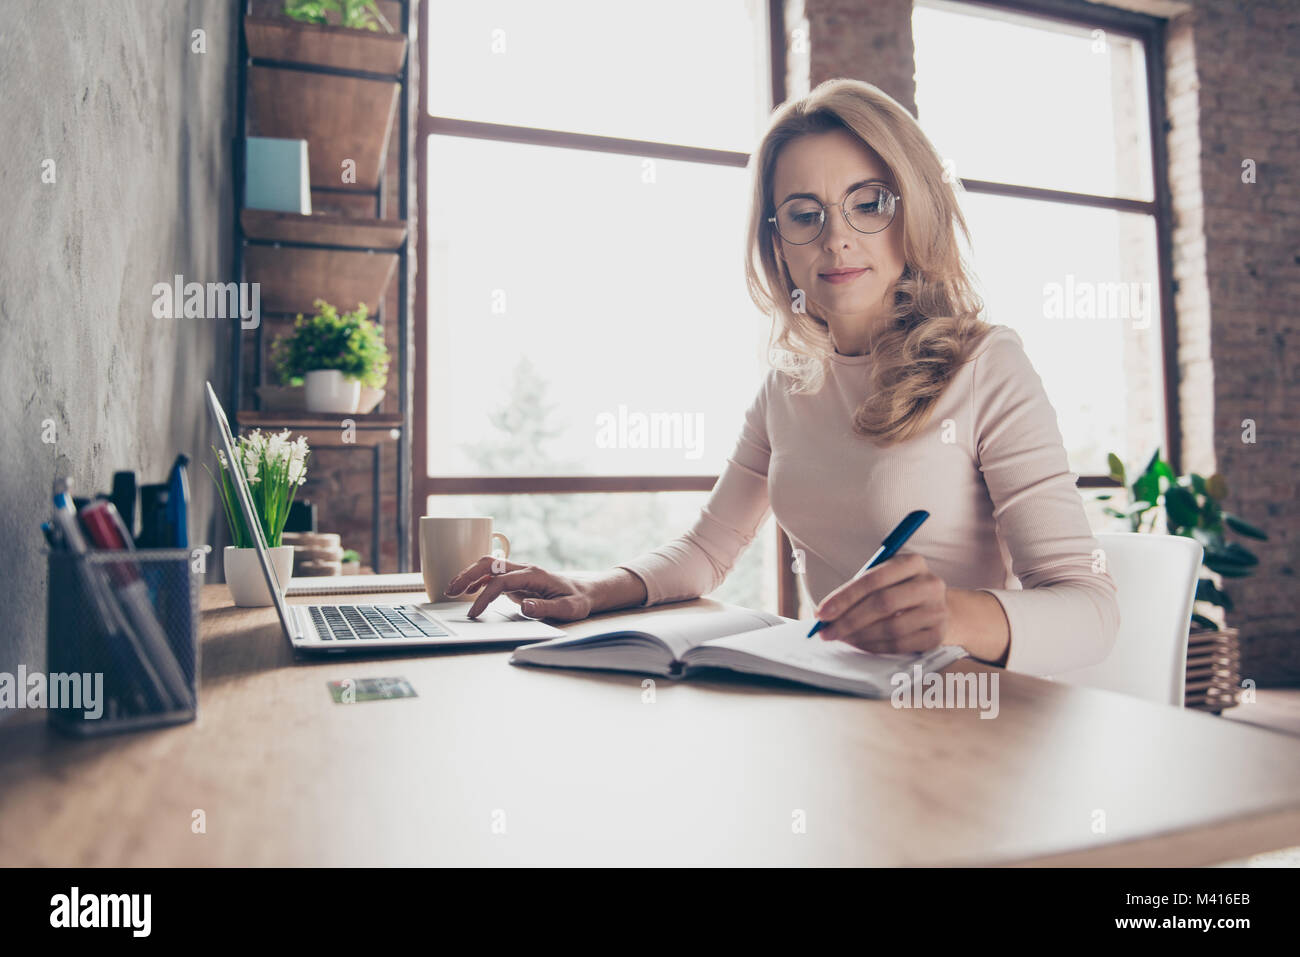 Portrait de beaux cheveux bouclés blonds avec confiance clever femme portant des vêtements décontractés, elle est assise à la table en face de l'ordinateur et vérifier Banque D'Images